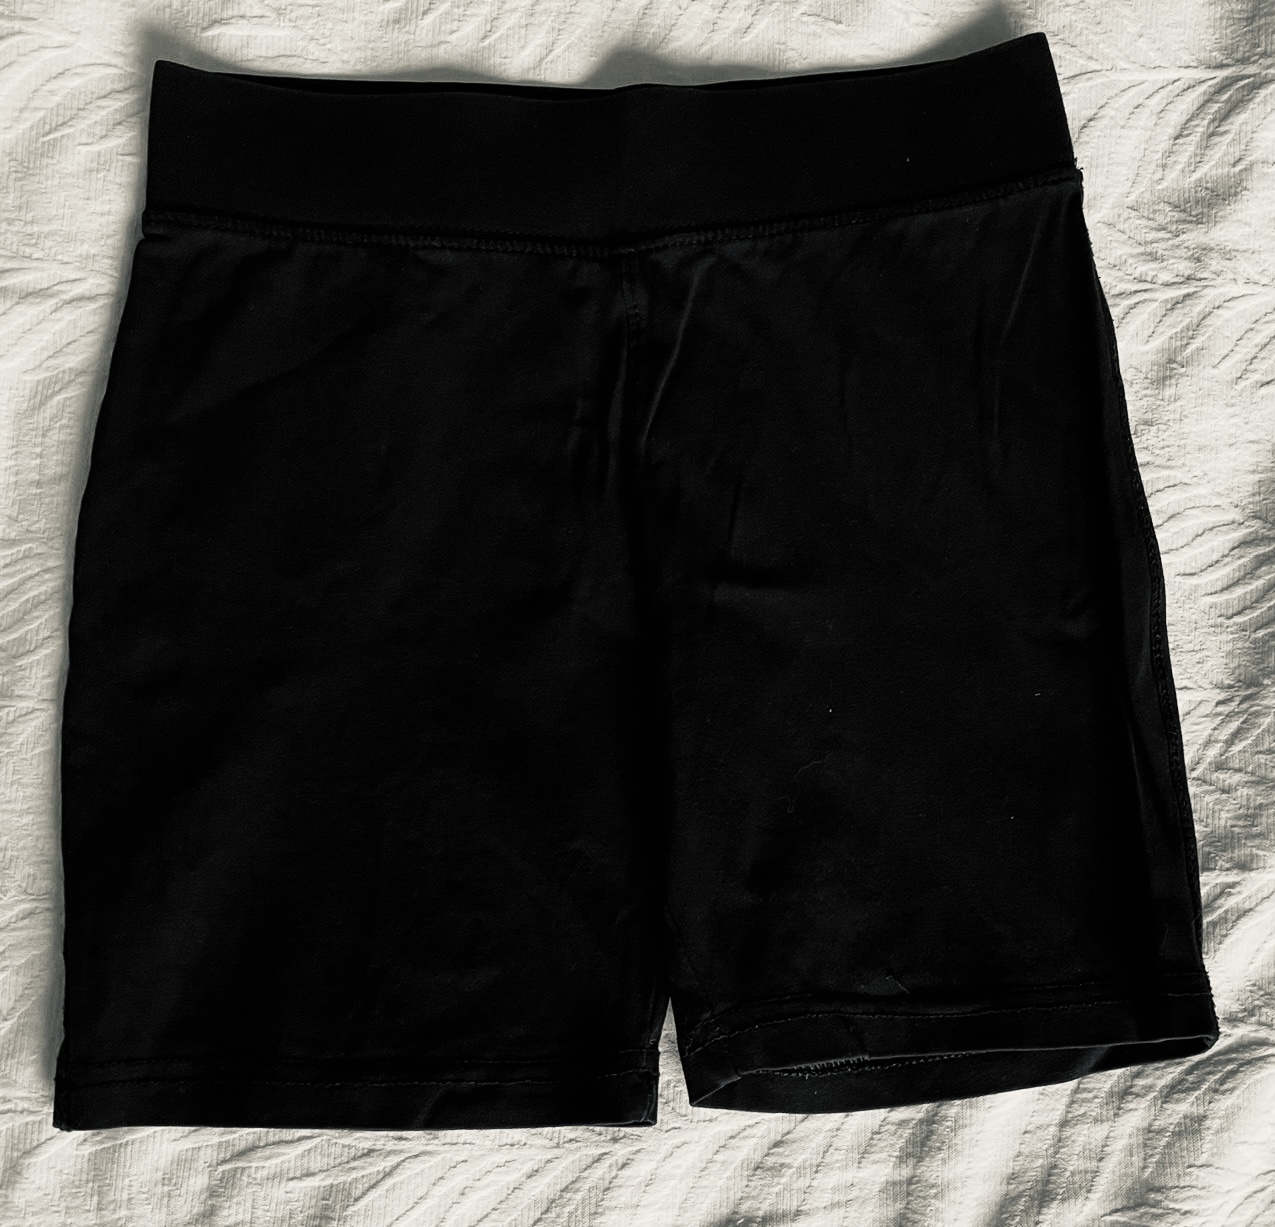 Black Cycling Shorts 6-7 / 7 yrs